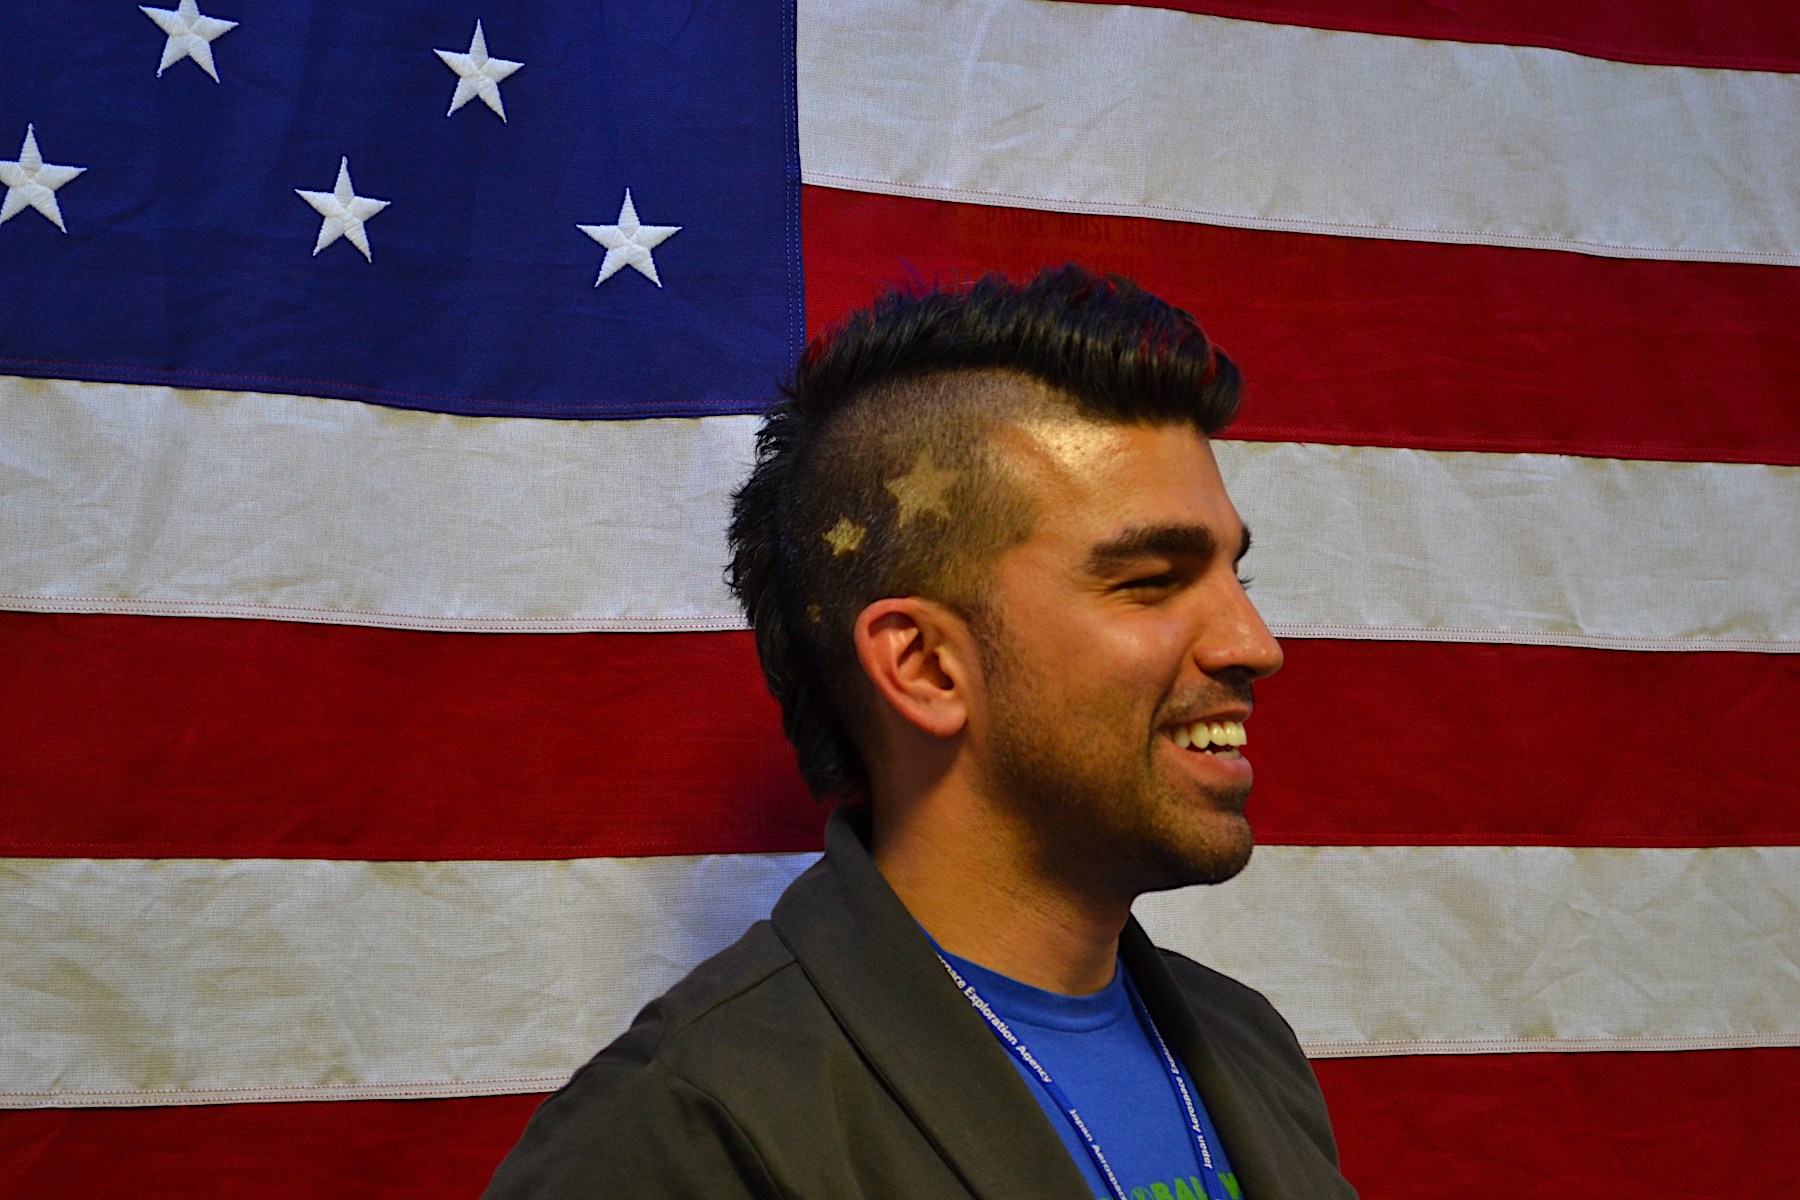 Un uomo che indossa un taglio di capelli alla mohawk sta davanti a una bandiera americana